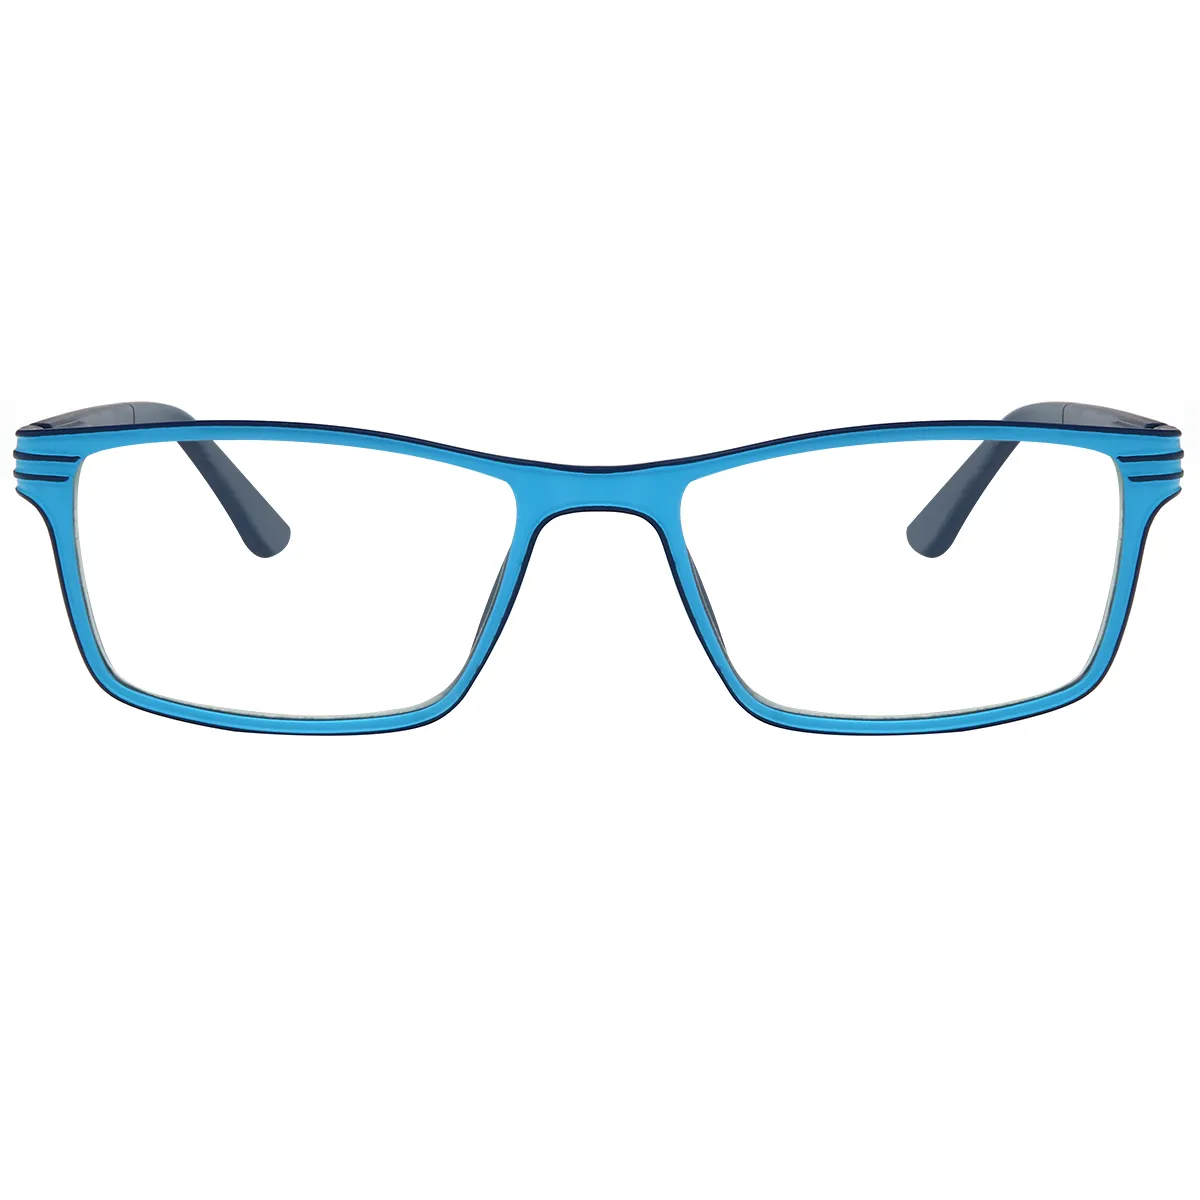 Classic Rectangle Blue  Reading Glasses for Women & Men